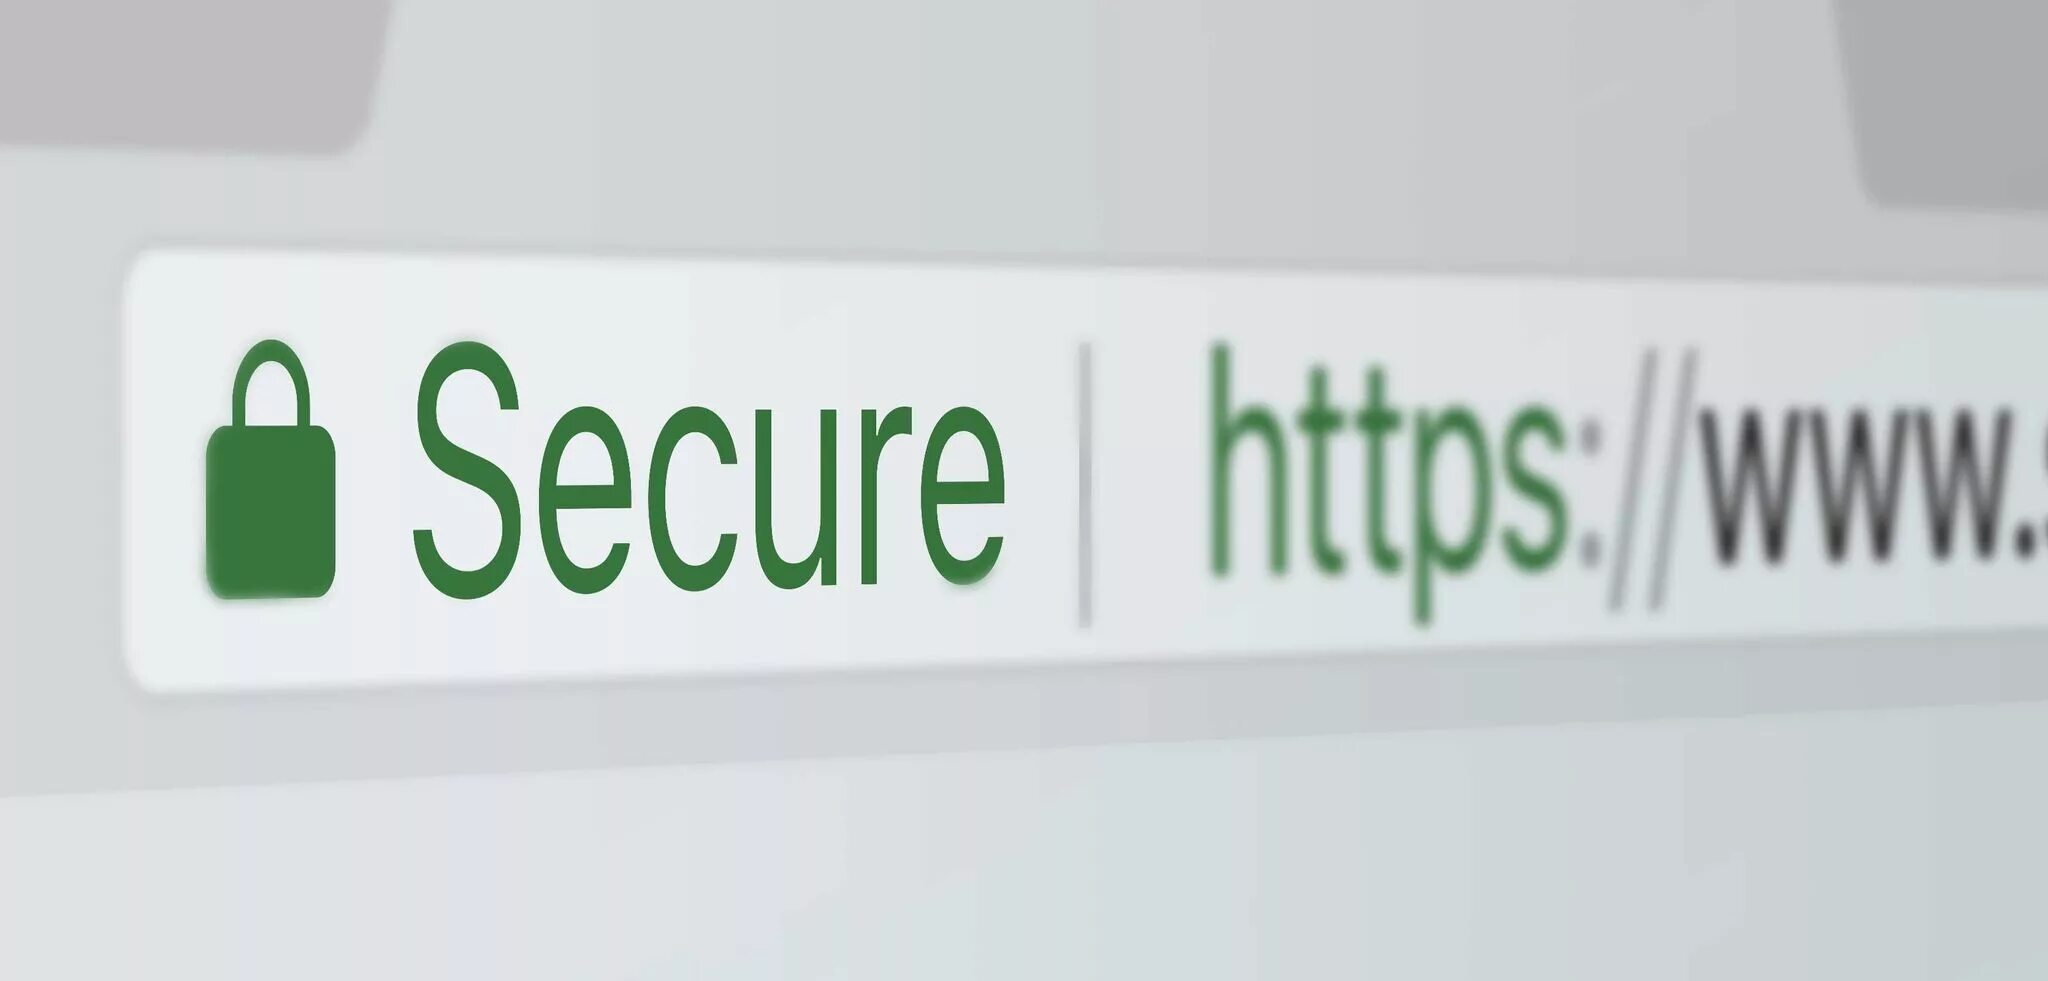 Ssl urls. SSL сертификат. SSL сертификат для сайта. SSL сертификат картинки. Защищено SSL.